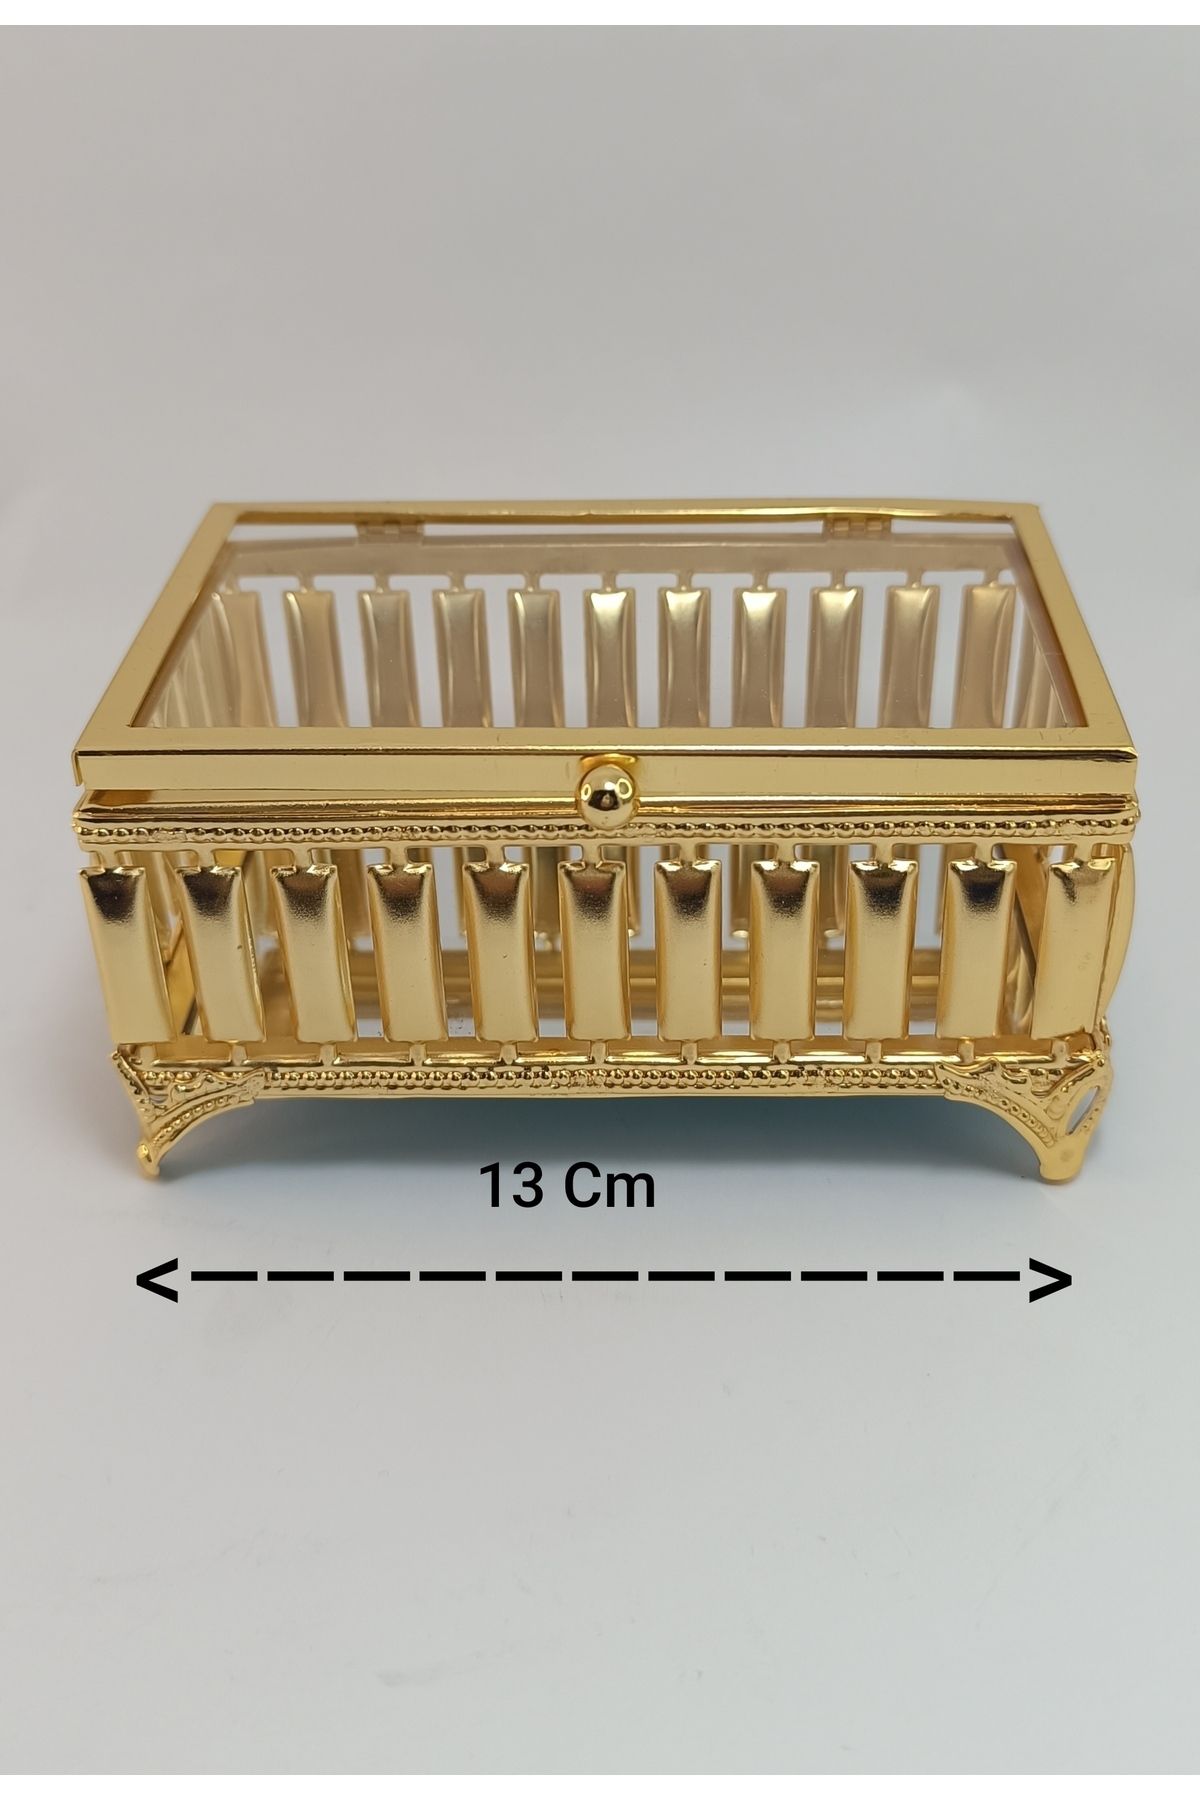 kristal home Metal Aynalı Cam Kapaklı Çikolata ve Mücevher Takı Kutusu Gold Sunumluk Küçük Boy , 13cm